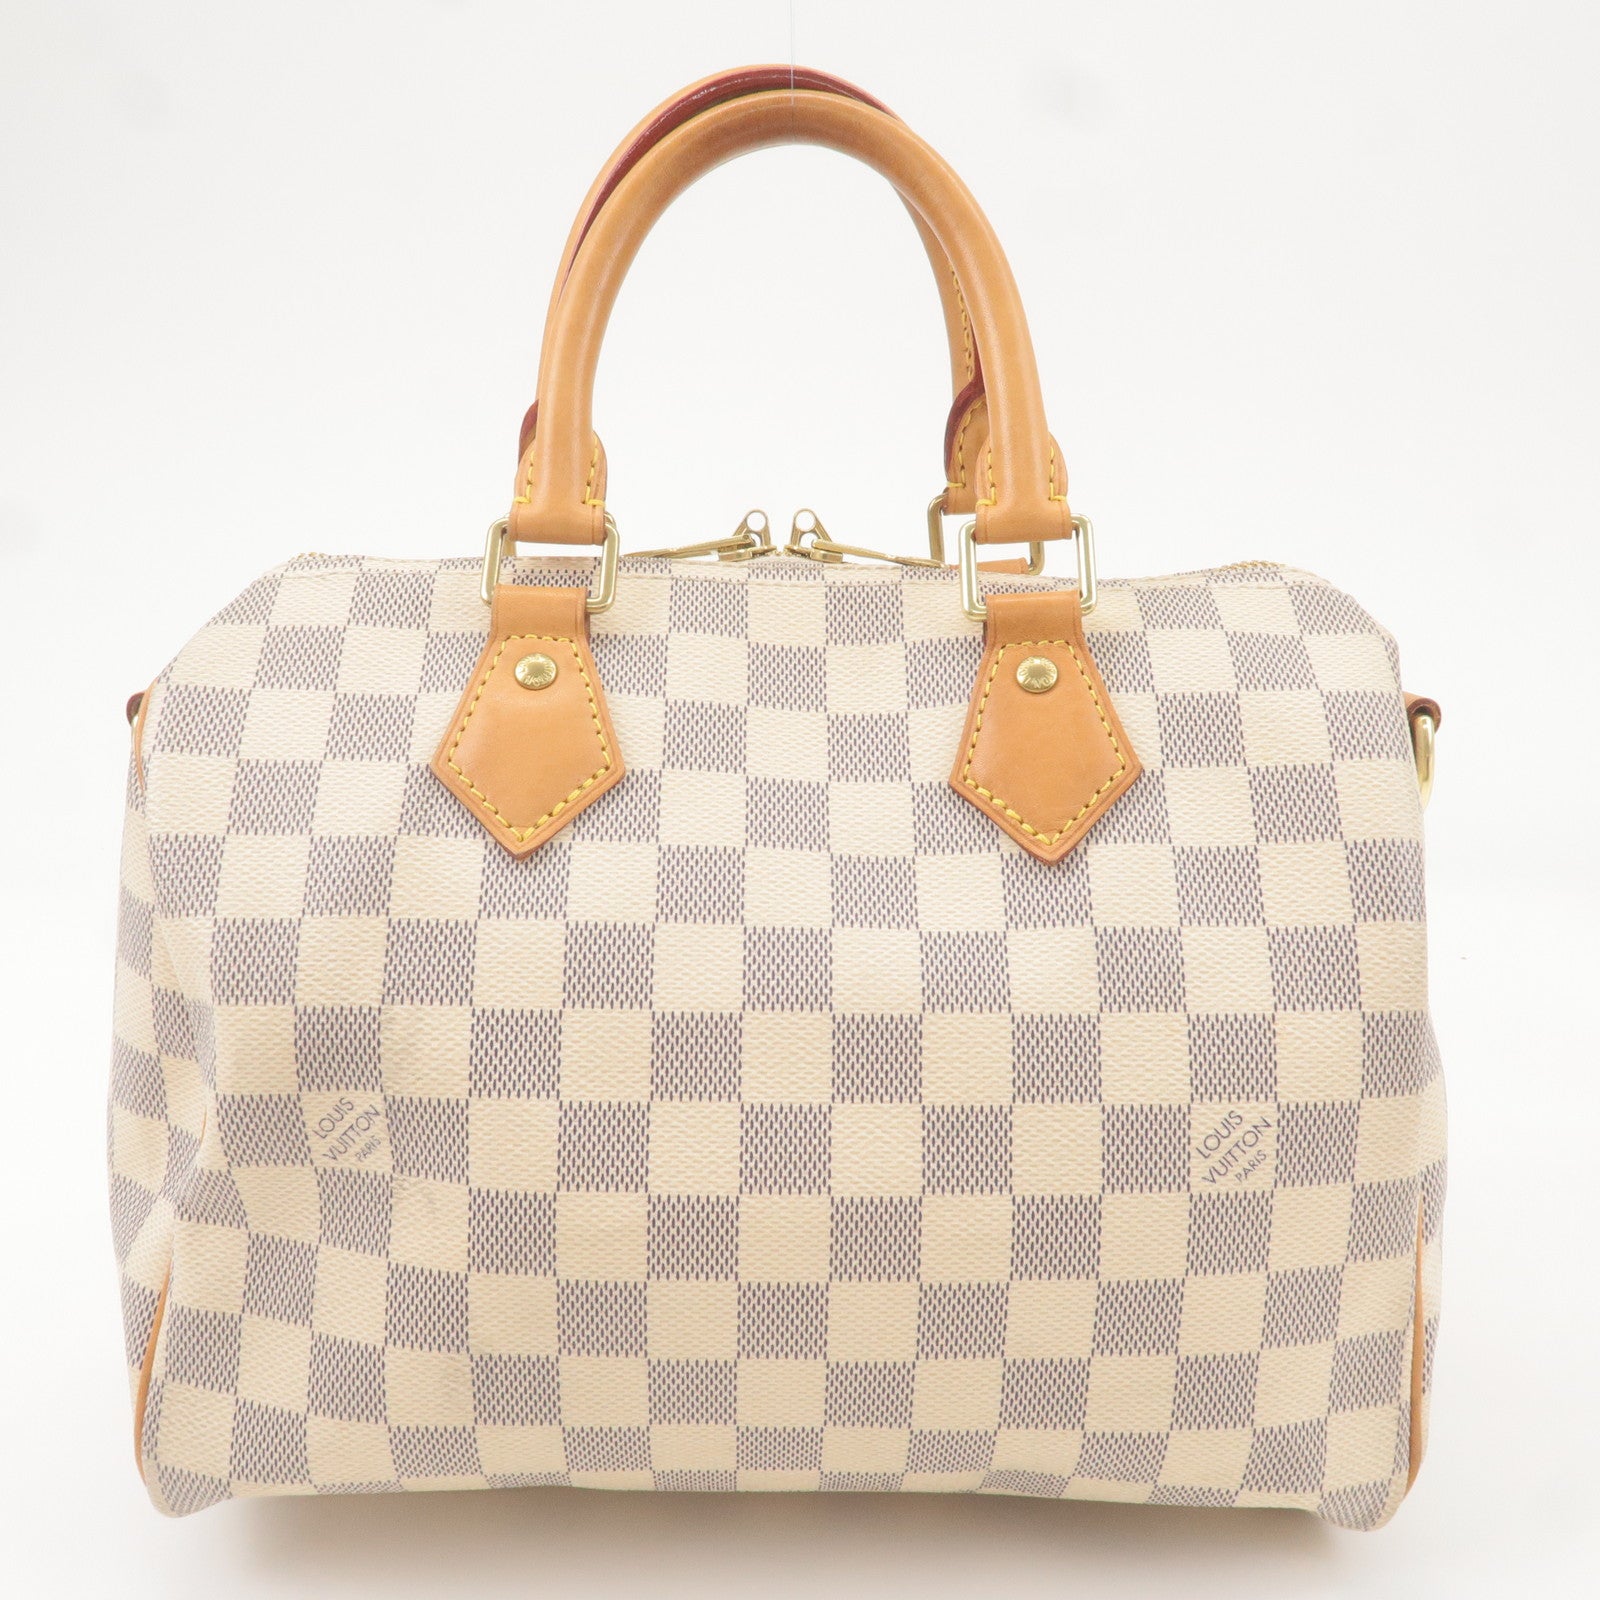 Hand-Made Bag Organizer For Louis Vuitton Speedy Bandouliere 25, Speedy B 25  